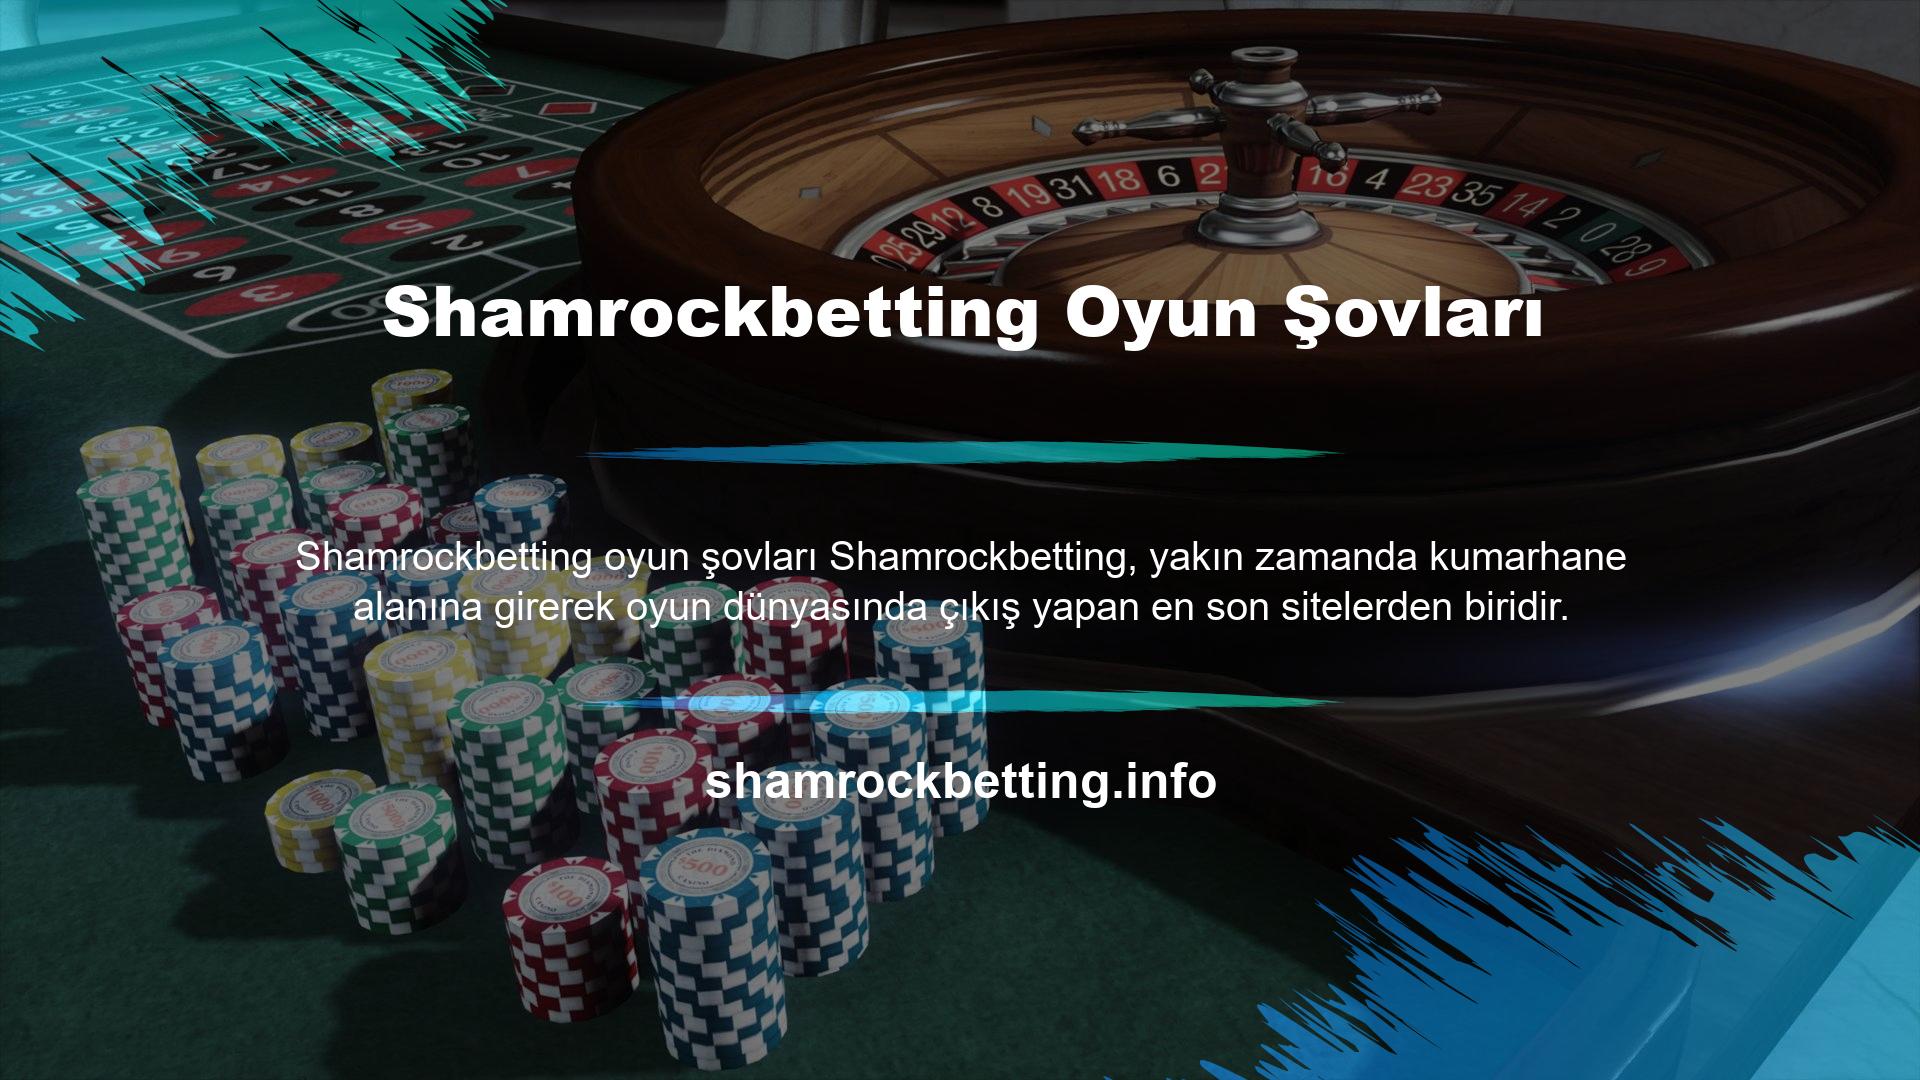 Türkiye'de yerleşik casino hizmetlerinden oldukça fazla gelir elde etmesi beklenen site, son zamanların en ünlü oyunlarından bazılarını da sunmaktadır